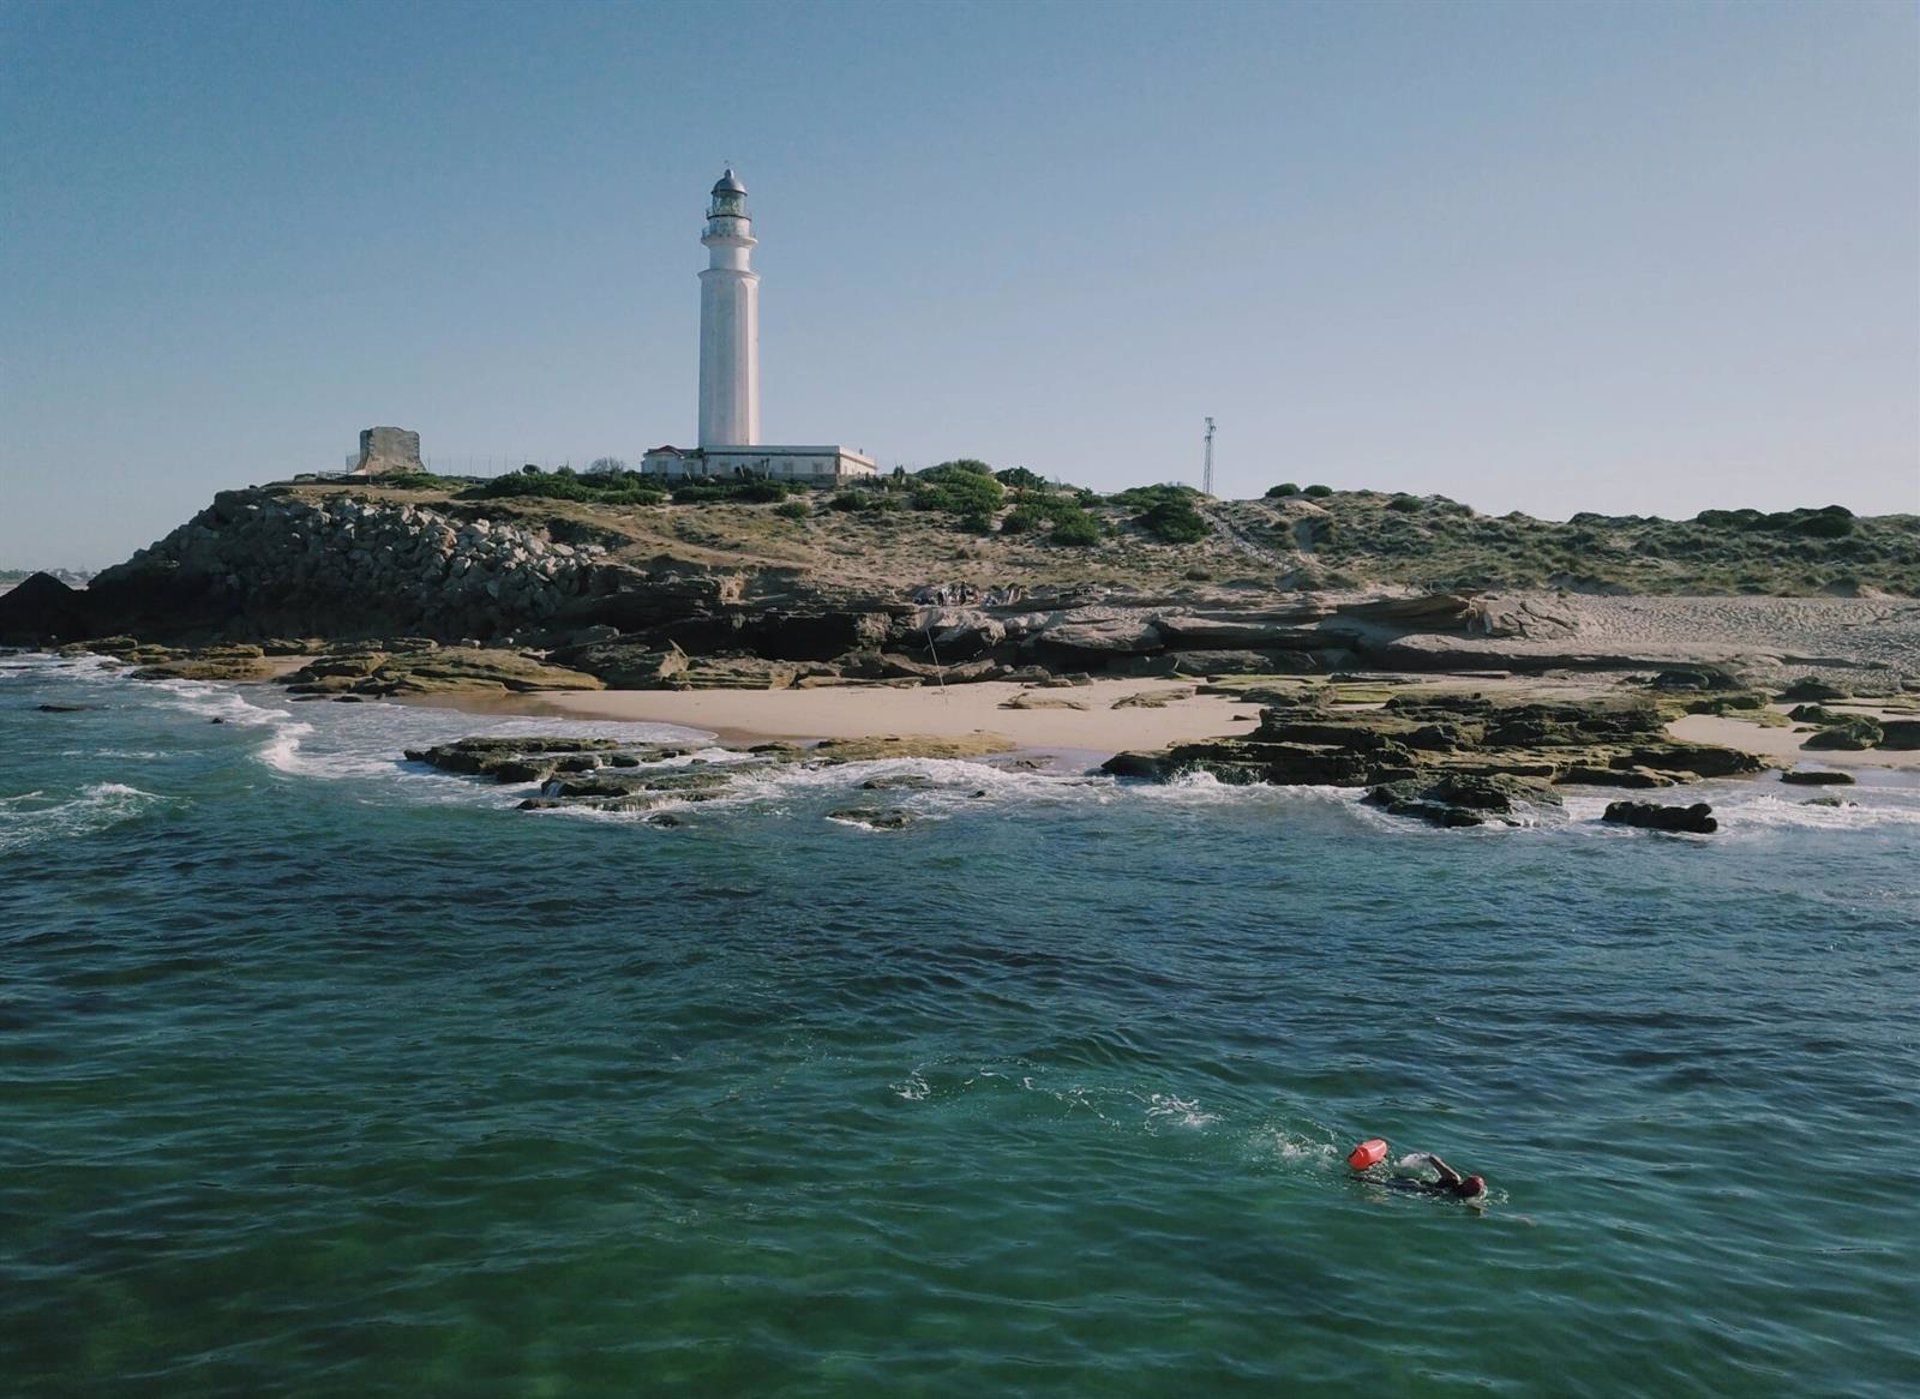 La Aemet extiende a la madrugada de este sábado el aviso amarillo por oleaje en el Estrecho. Archivo - Cabo Trafalgar (Cádiz) en imagen de archivo. - CALIFA VEJER - Archivo